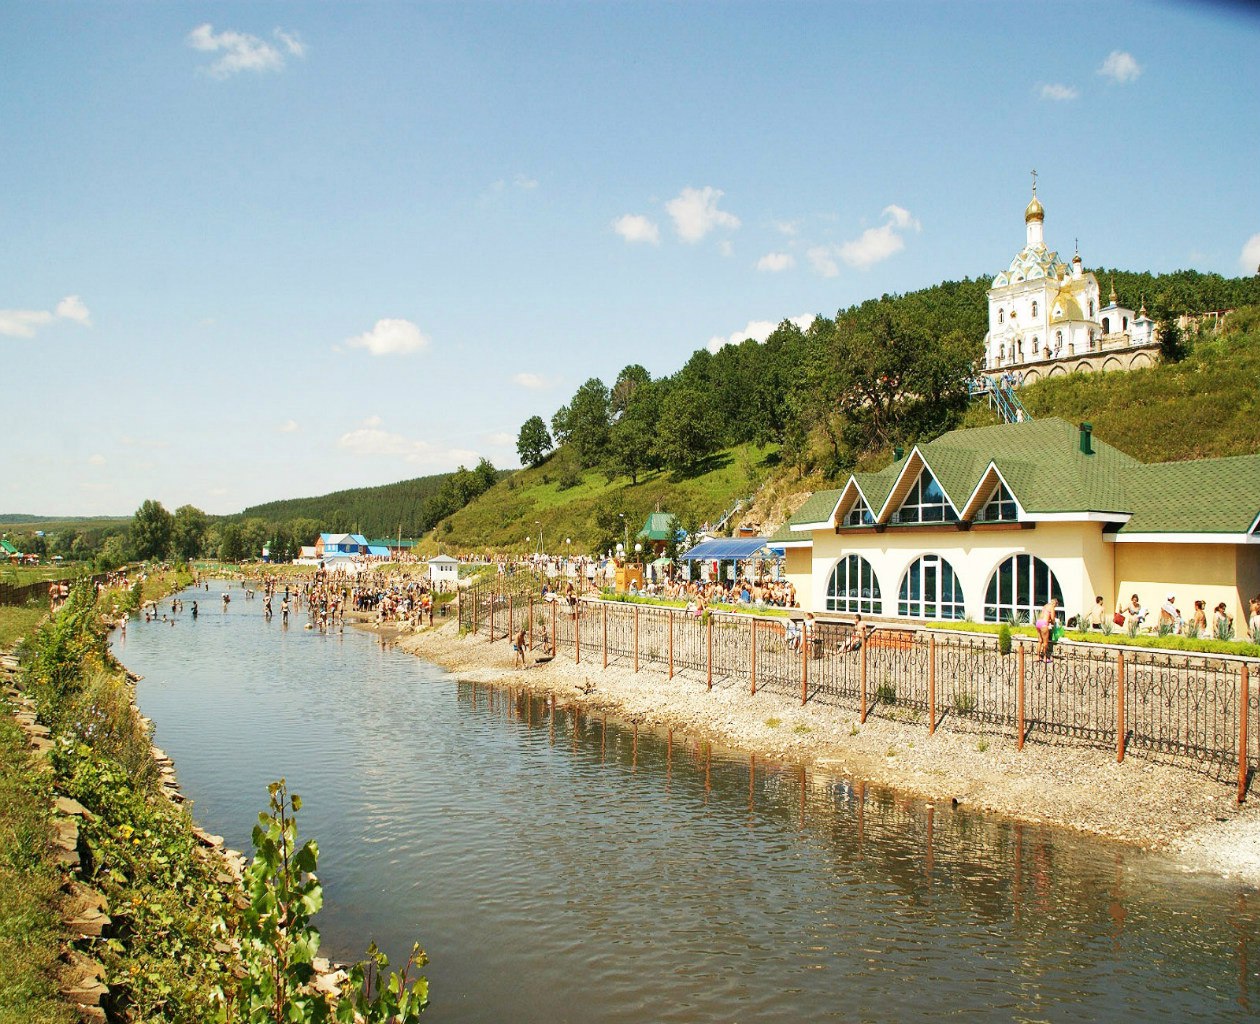 Курорт Красноусольск известен своими солеными сероводородными водами